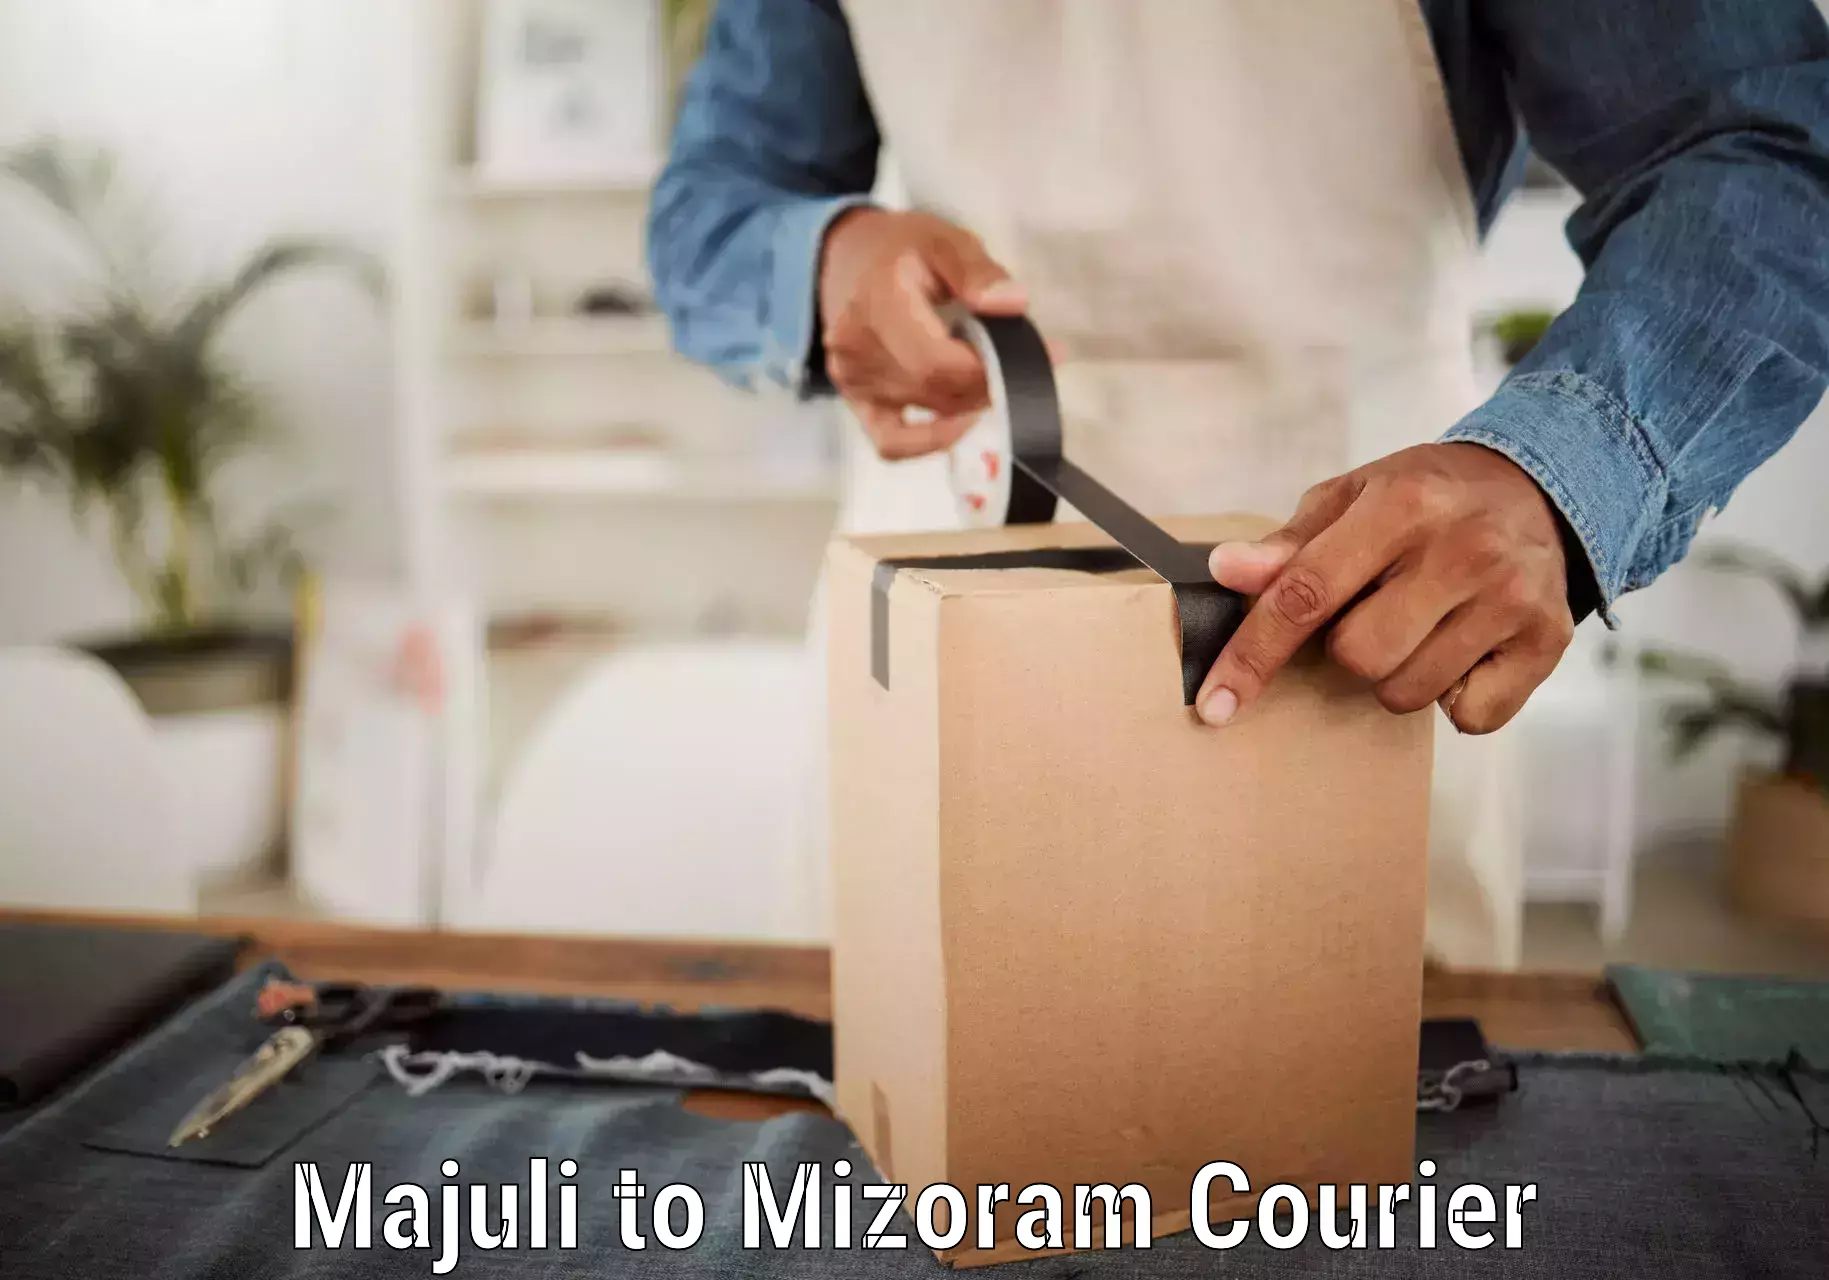 Customer-centric shipping Majuli to Saiha